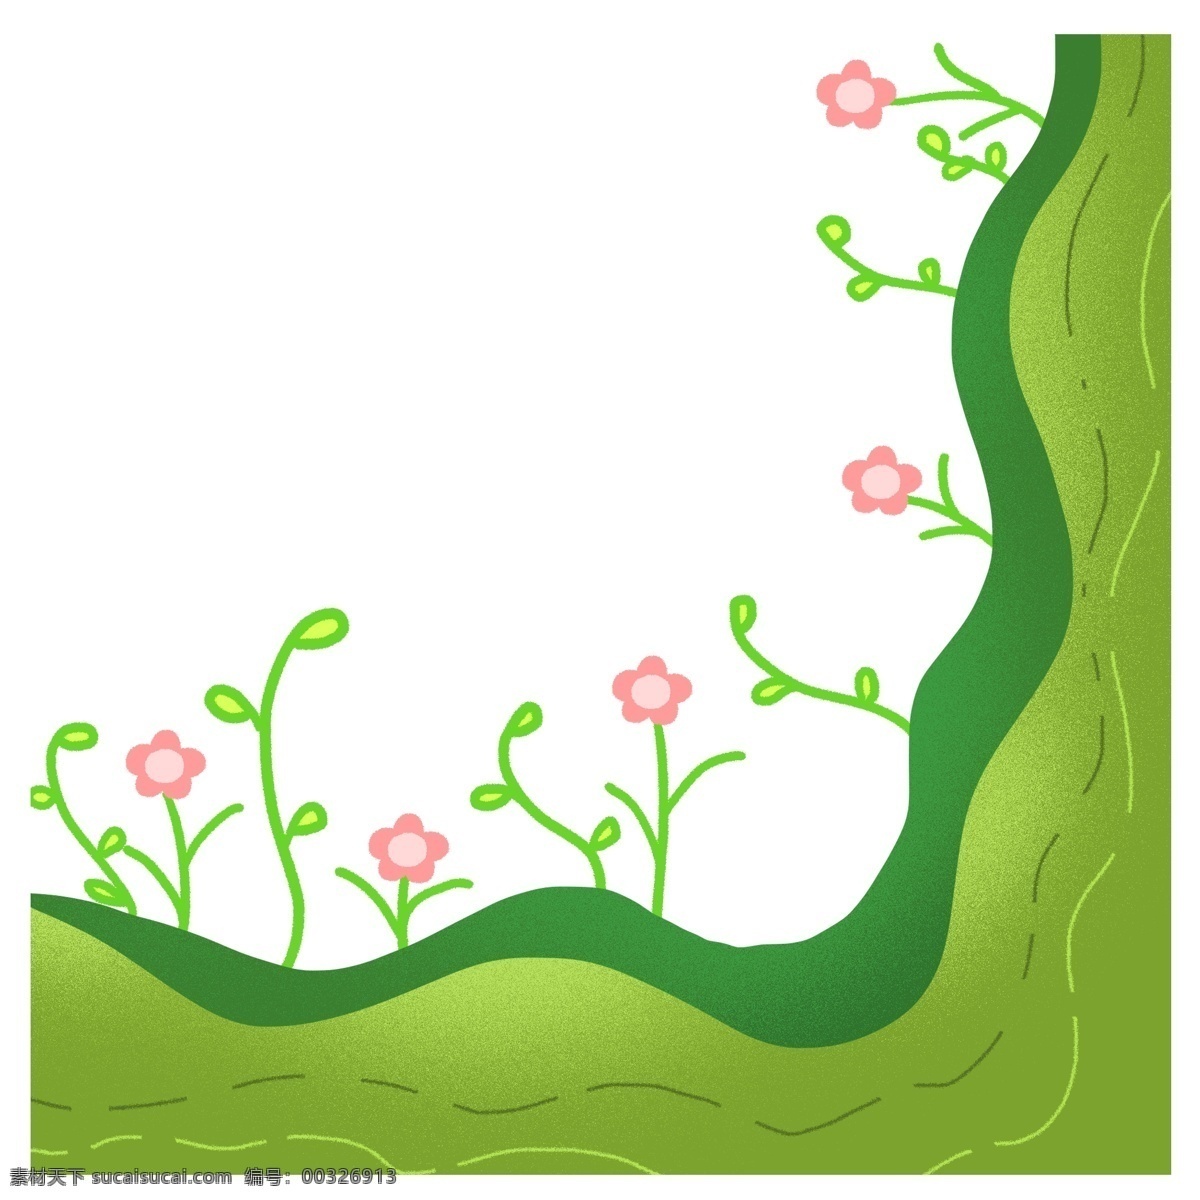 春天 边框 草地 免 抠 花朵 盛开 草丛 原创手绘 卡通 绿色 植物 生机勃勃 可爱 简约 粉红色